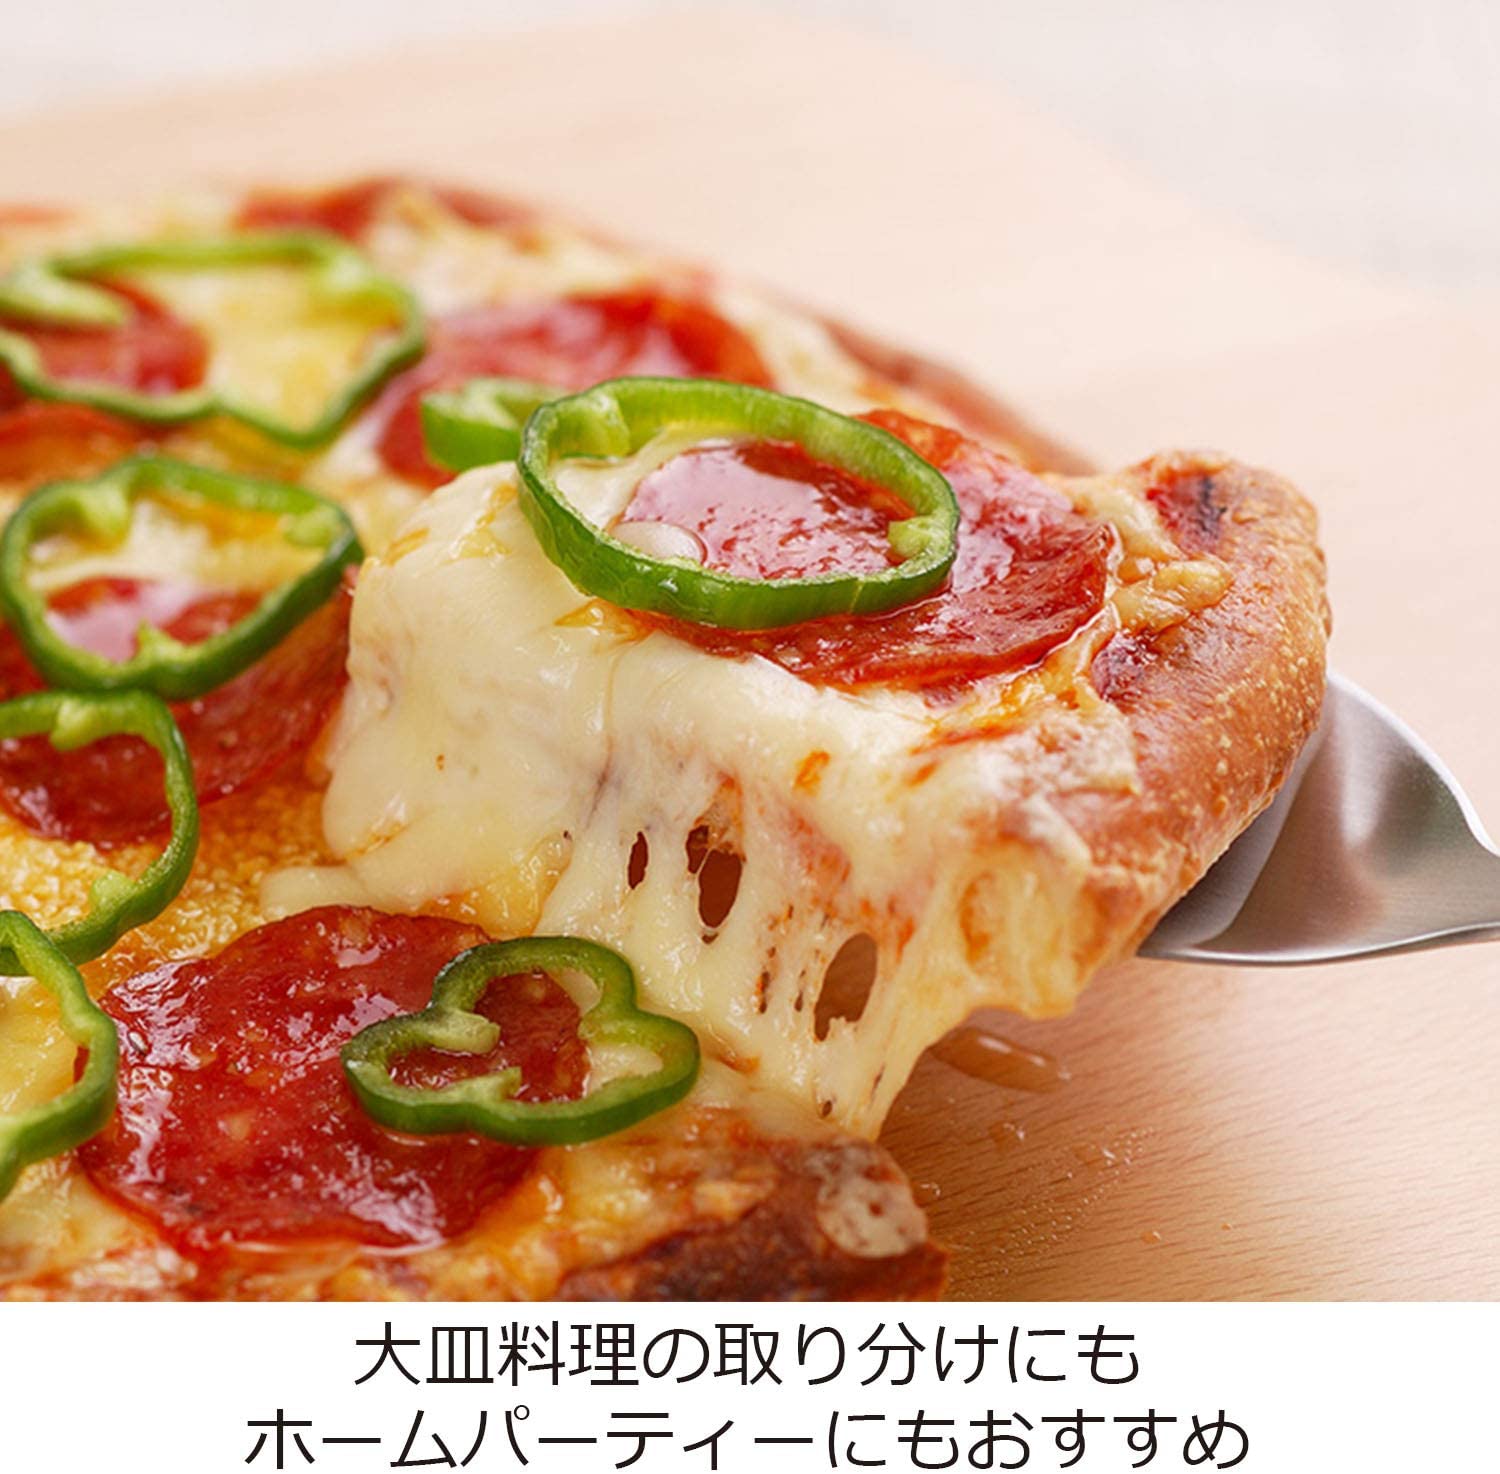 【預購】日本製 AUX 帶鋸齒牛排湯匙 - Cnjpkitchen ❤️ 🇯🇵日本廚具 家居生活雜貨店